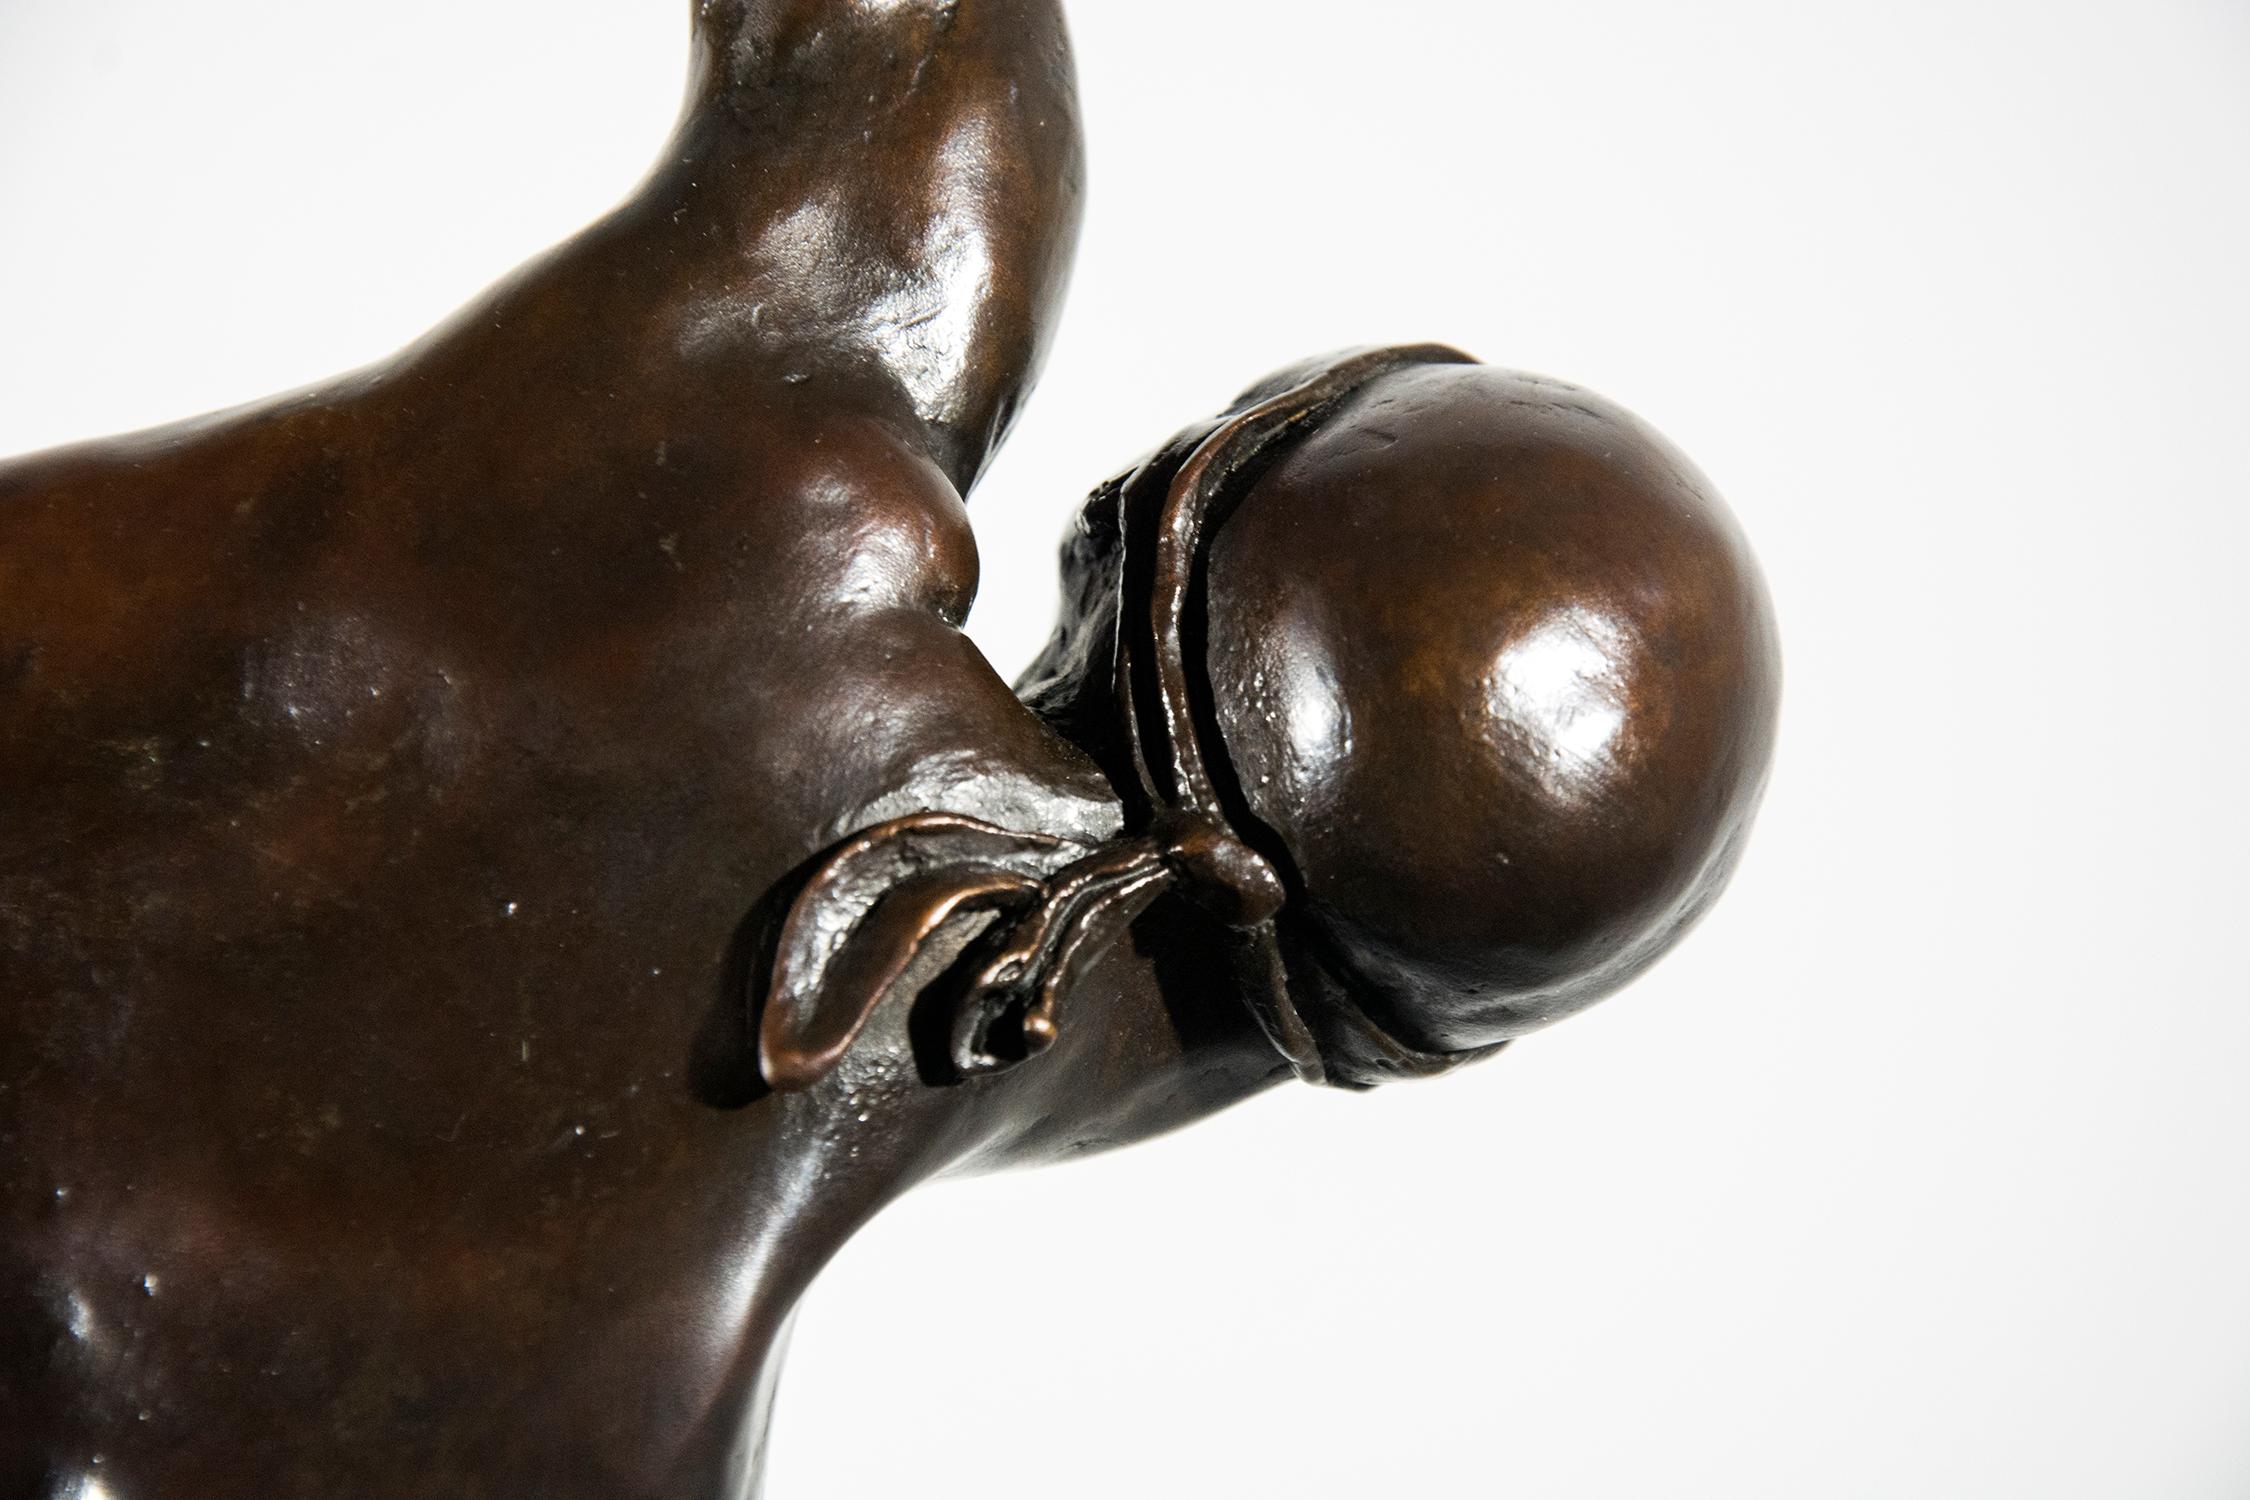 William Hung schafft dynamische, ausdrucksstarke und zugleich elegante Skulpturen, die sich mit dem menschlichen Dasein auseinandersetzen. In diesem intimen Werk aus reicher Bronze balanciert ein Athlet auf einer Hand, wobei sein nackter,